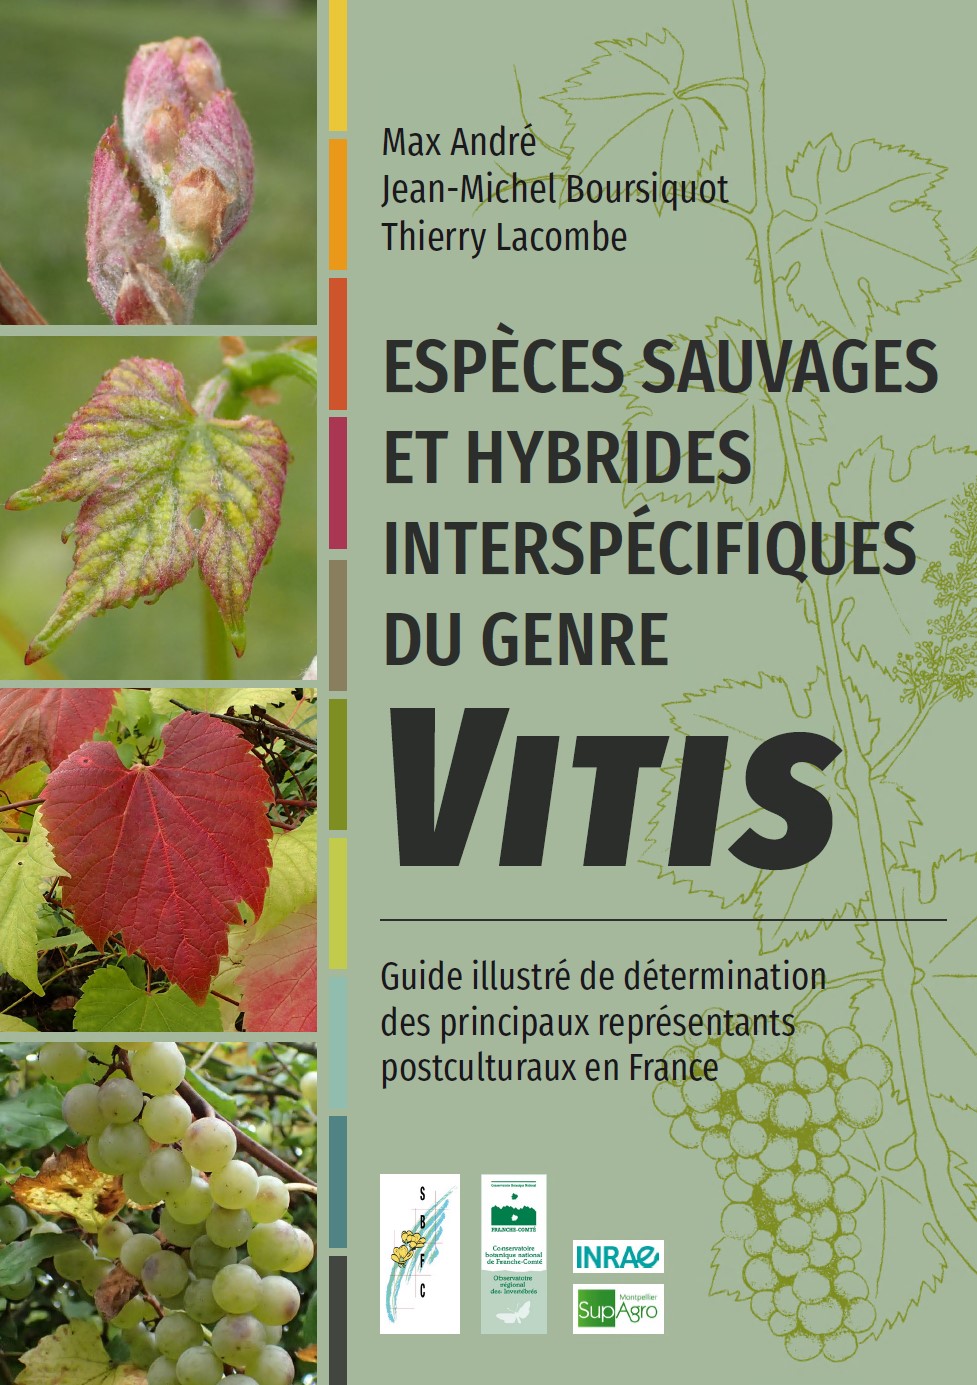 Espèces sauvages et hybrides interspécifiques du genre Vitis. Guide illustré de déterminationdes principaux représentants postculturauxen France.